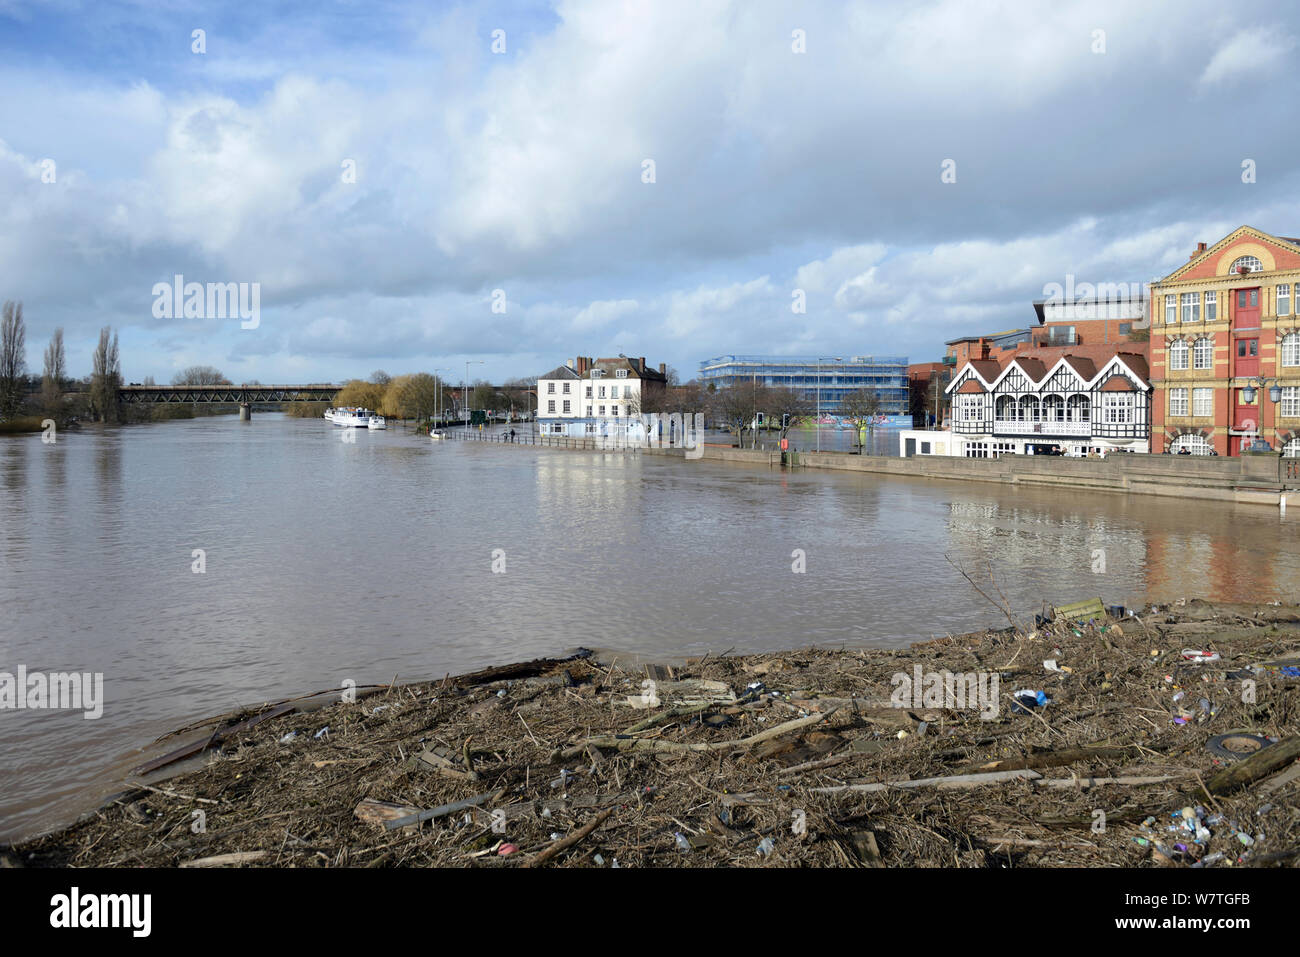 Paisaje desde aguas arriba del puente de Worcester durante inundaciones récord, con lavados escombros, Worcestershire, Inglaterra, Reino Unido, 13 de febrero de 2014. Foto de stock